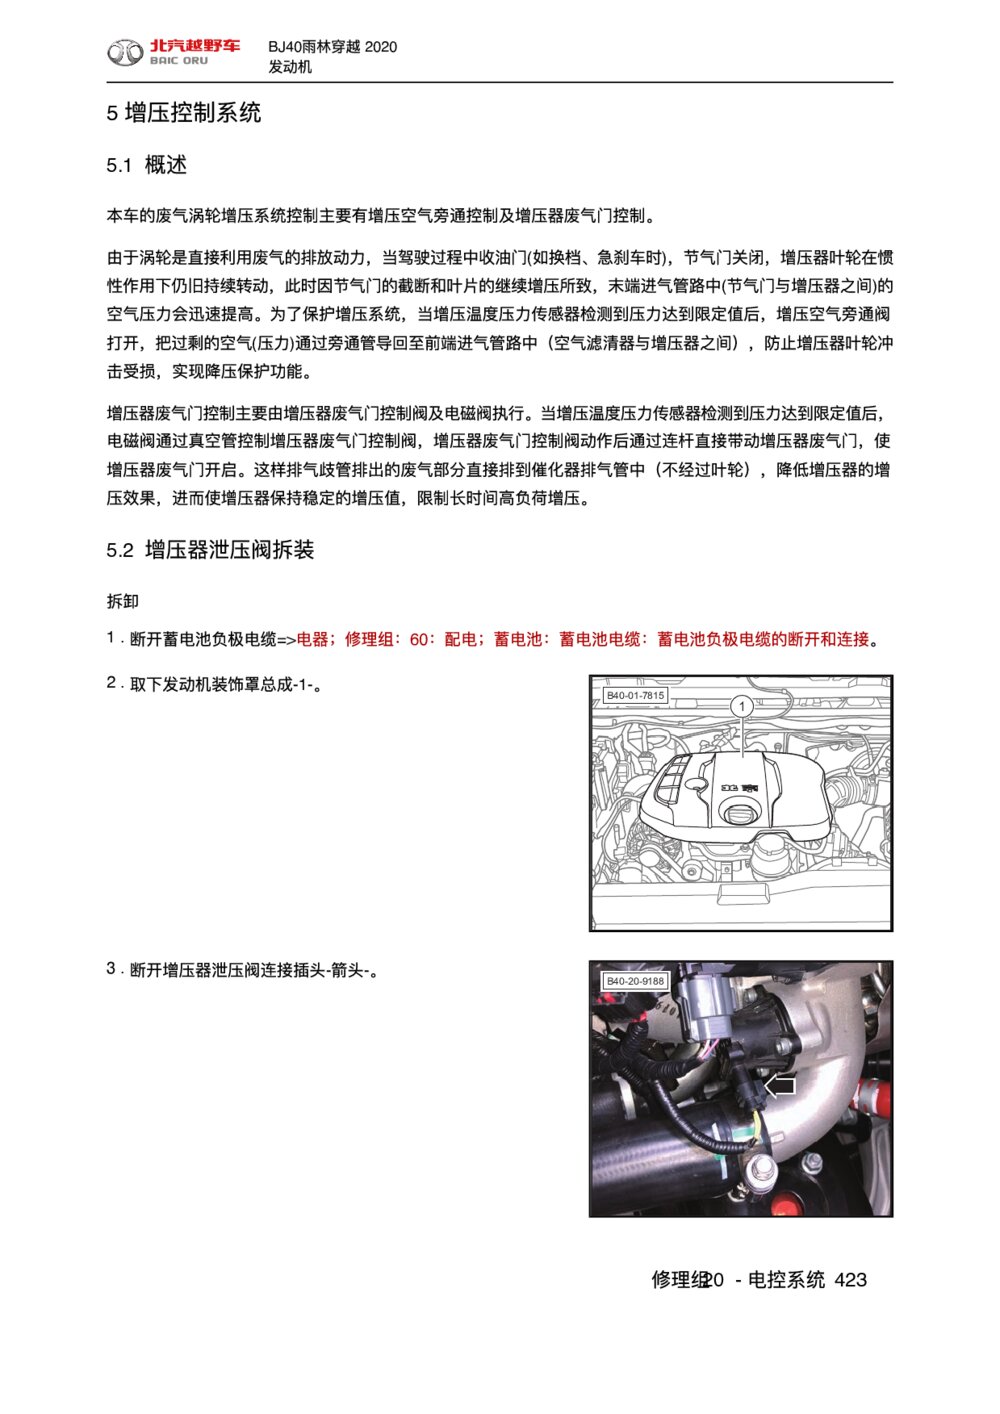 2020款北京BJ40雨林穿越版增压控制系统手册